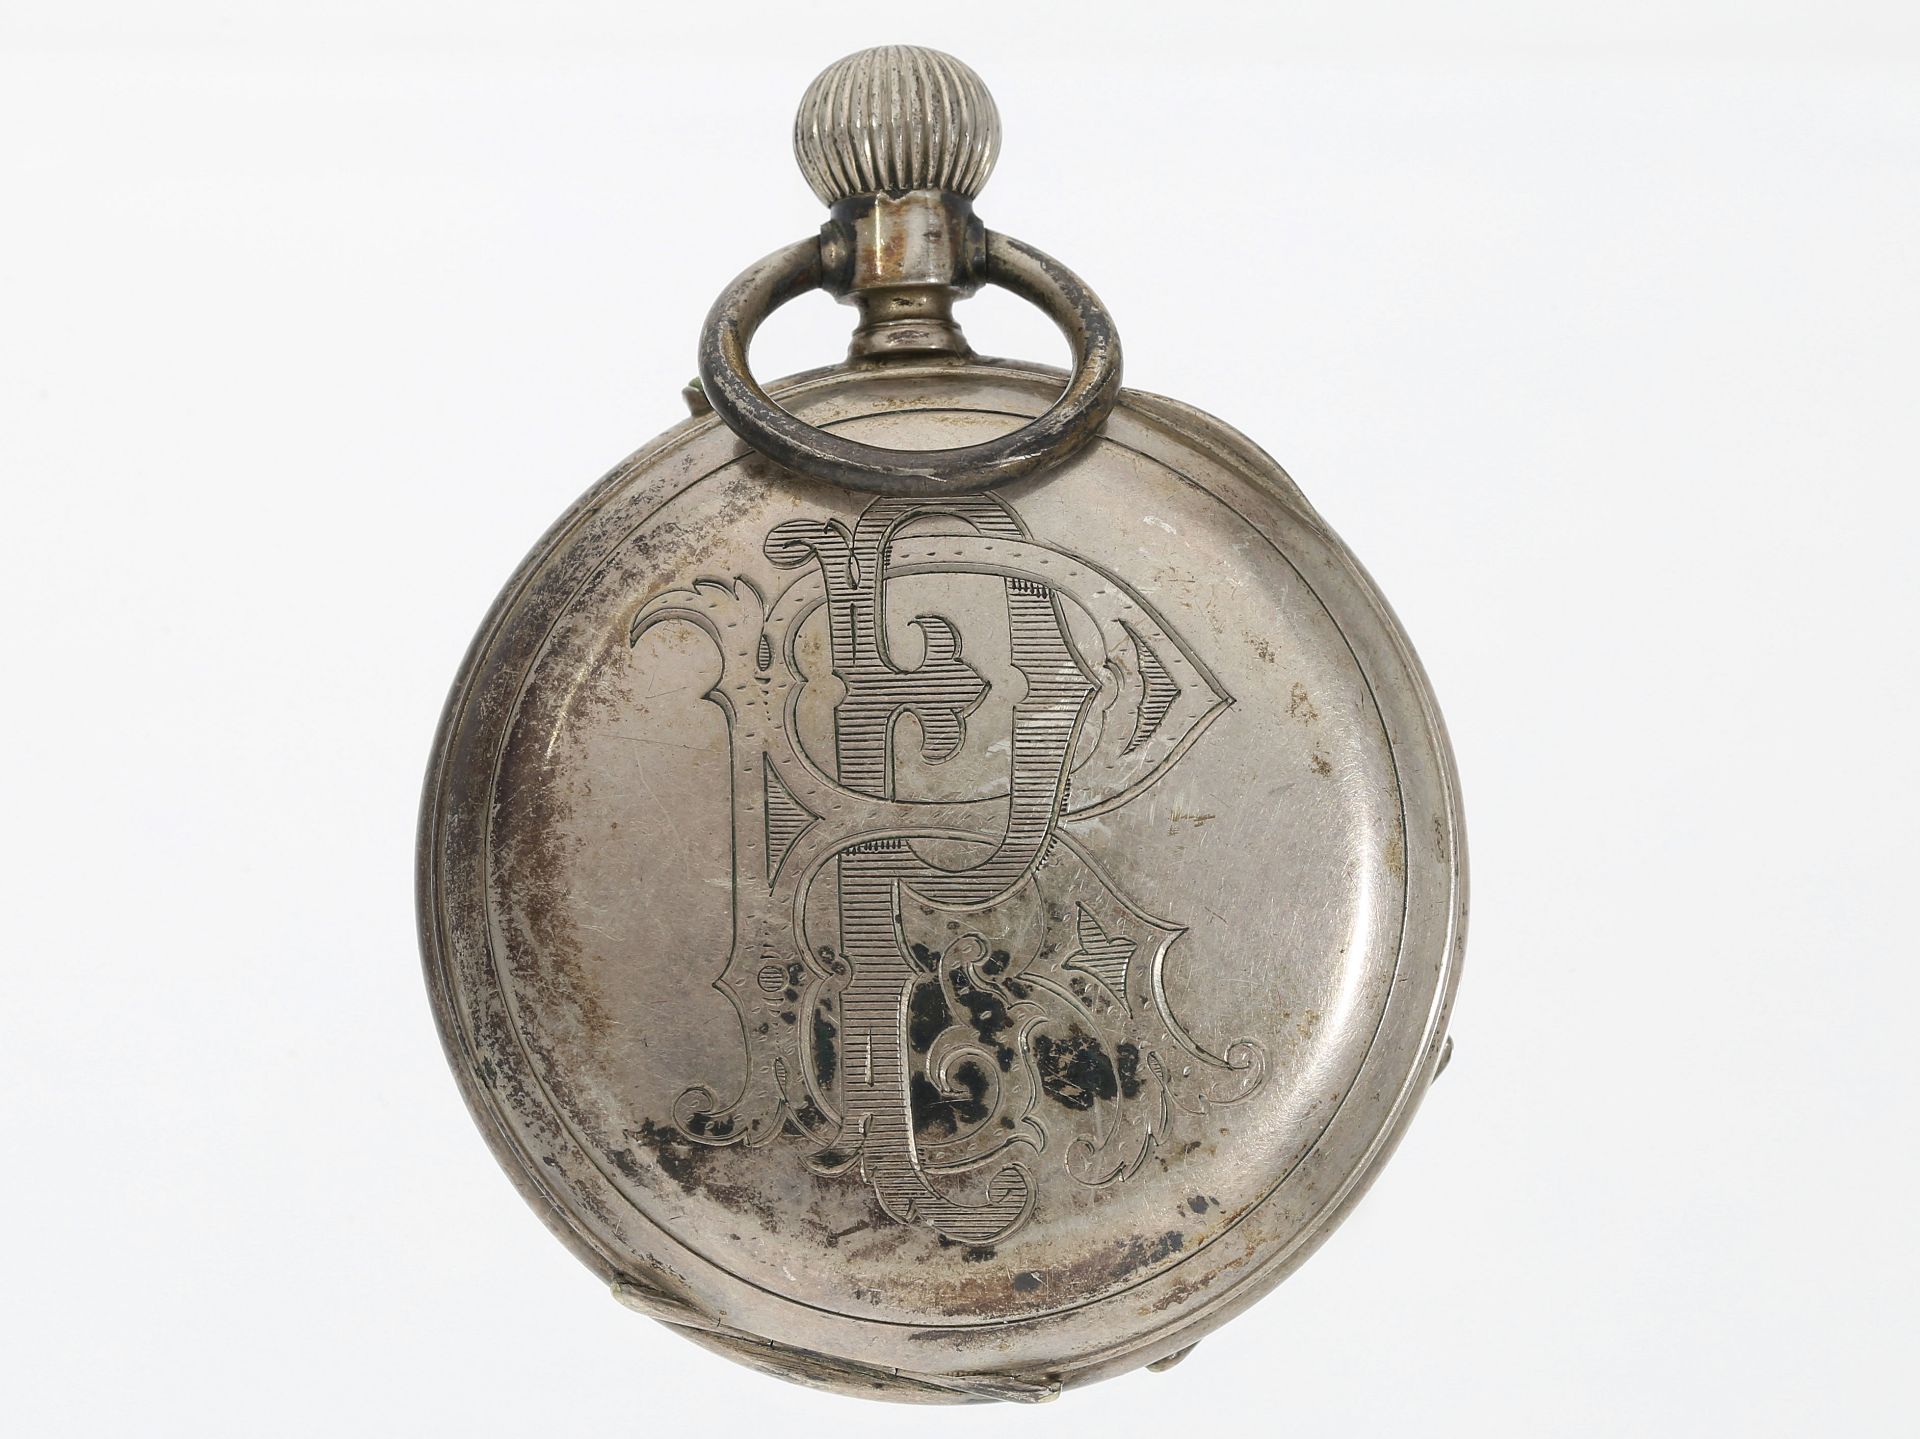 Taschenuhr: frühe Taschenuhr mit Zeigerdatum, Roudergues au Havre, Frankreich um 1880 - Bild 2 aus 4